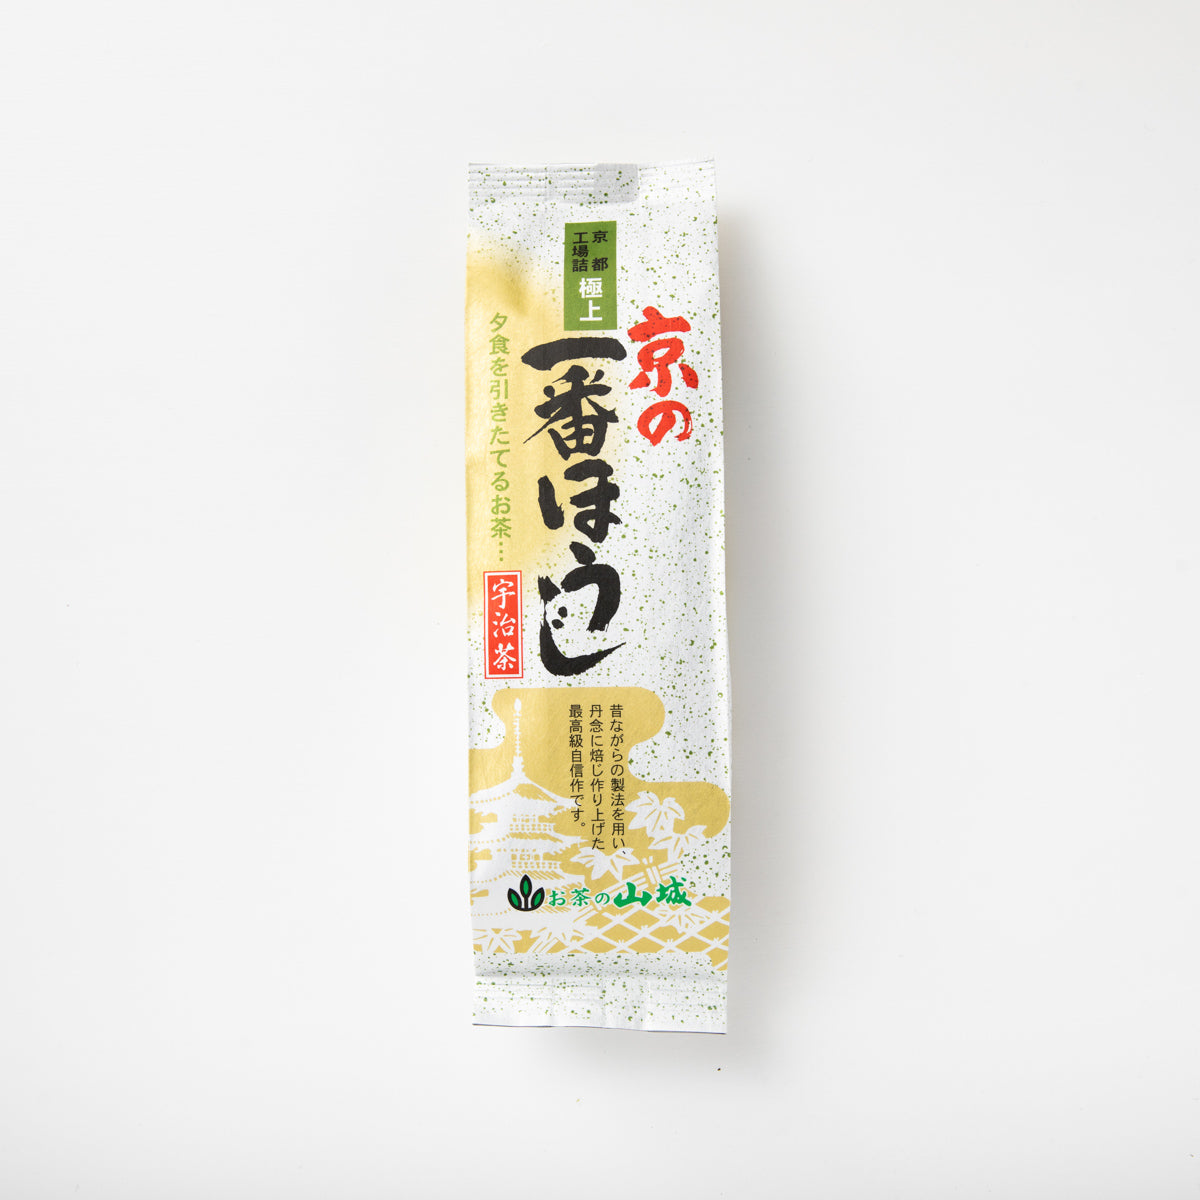 京の一番ほうじ茶 – お茶・緑茶の製造販売 山城物産